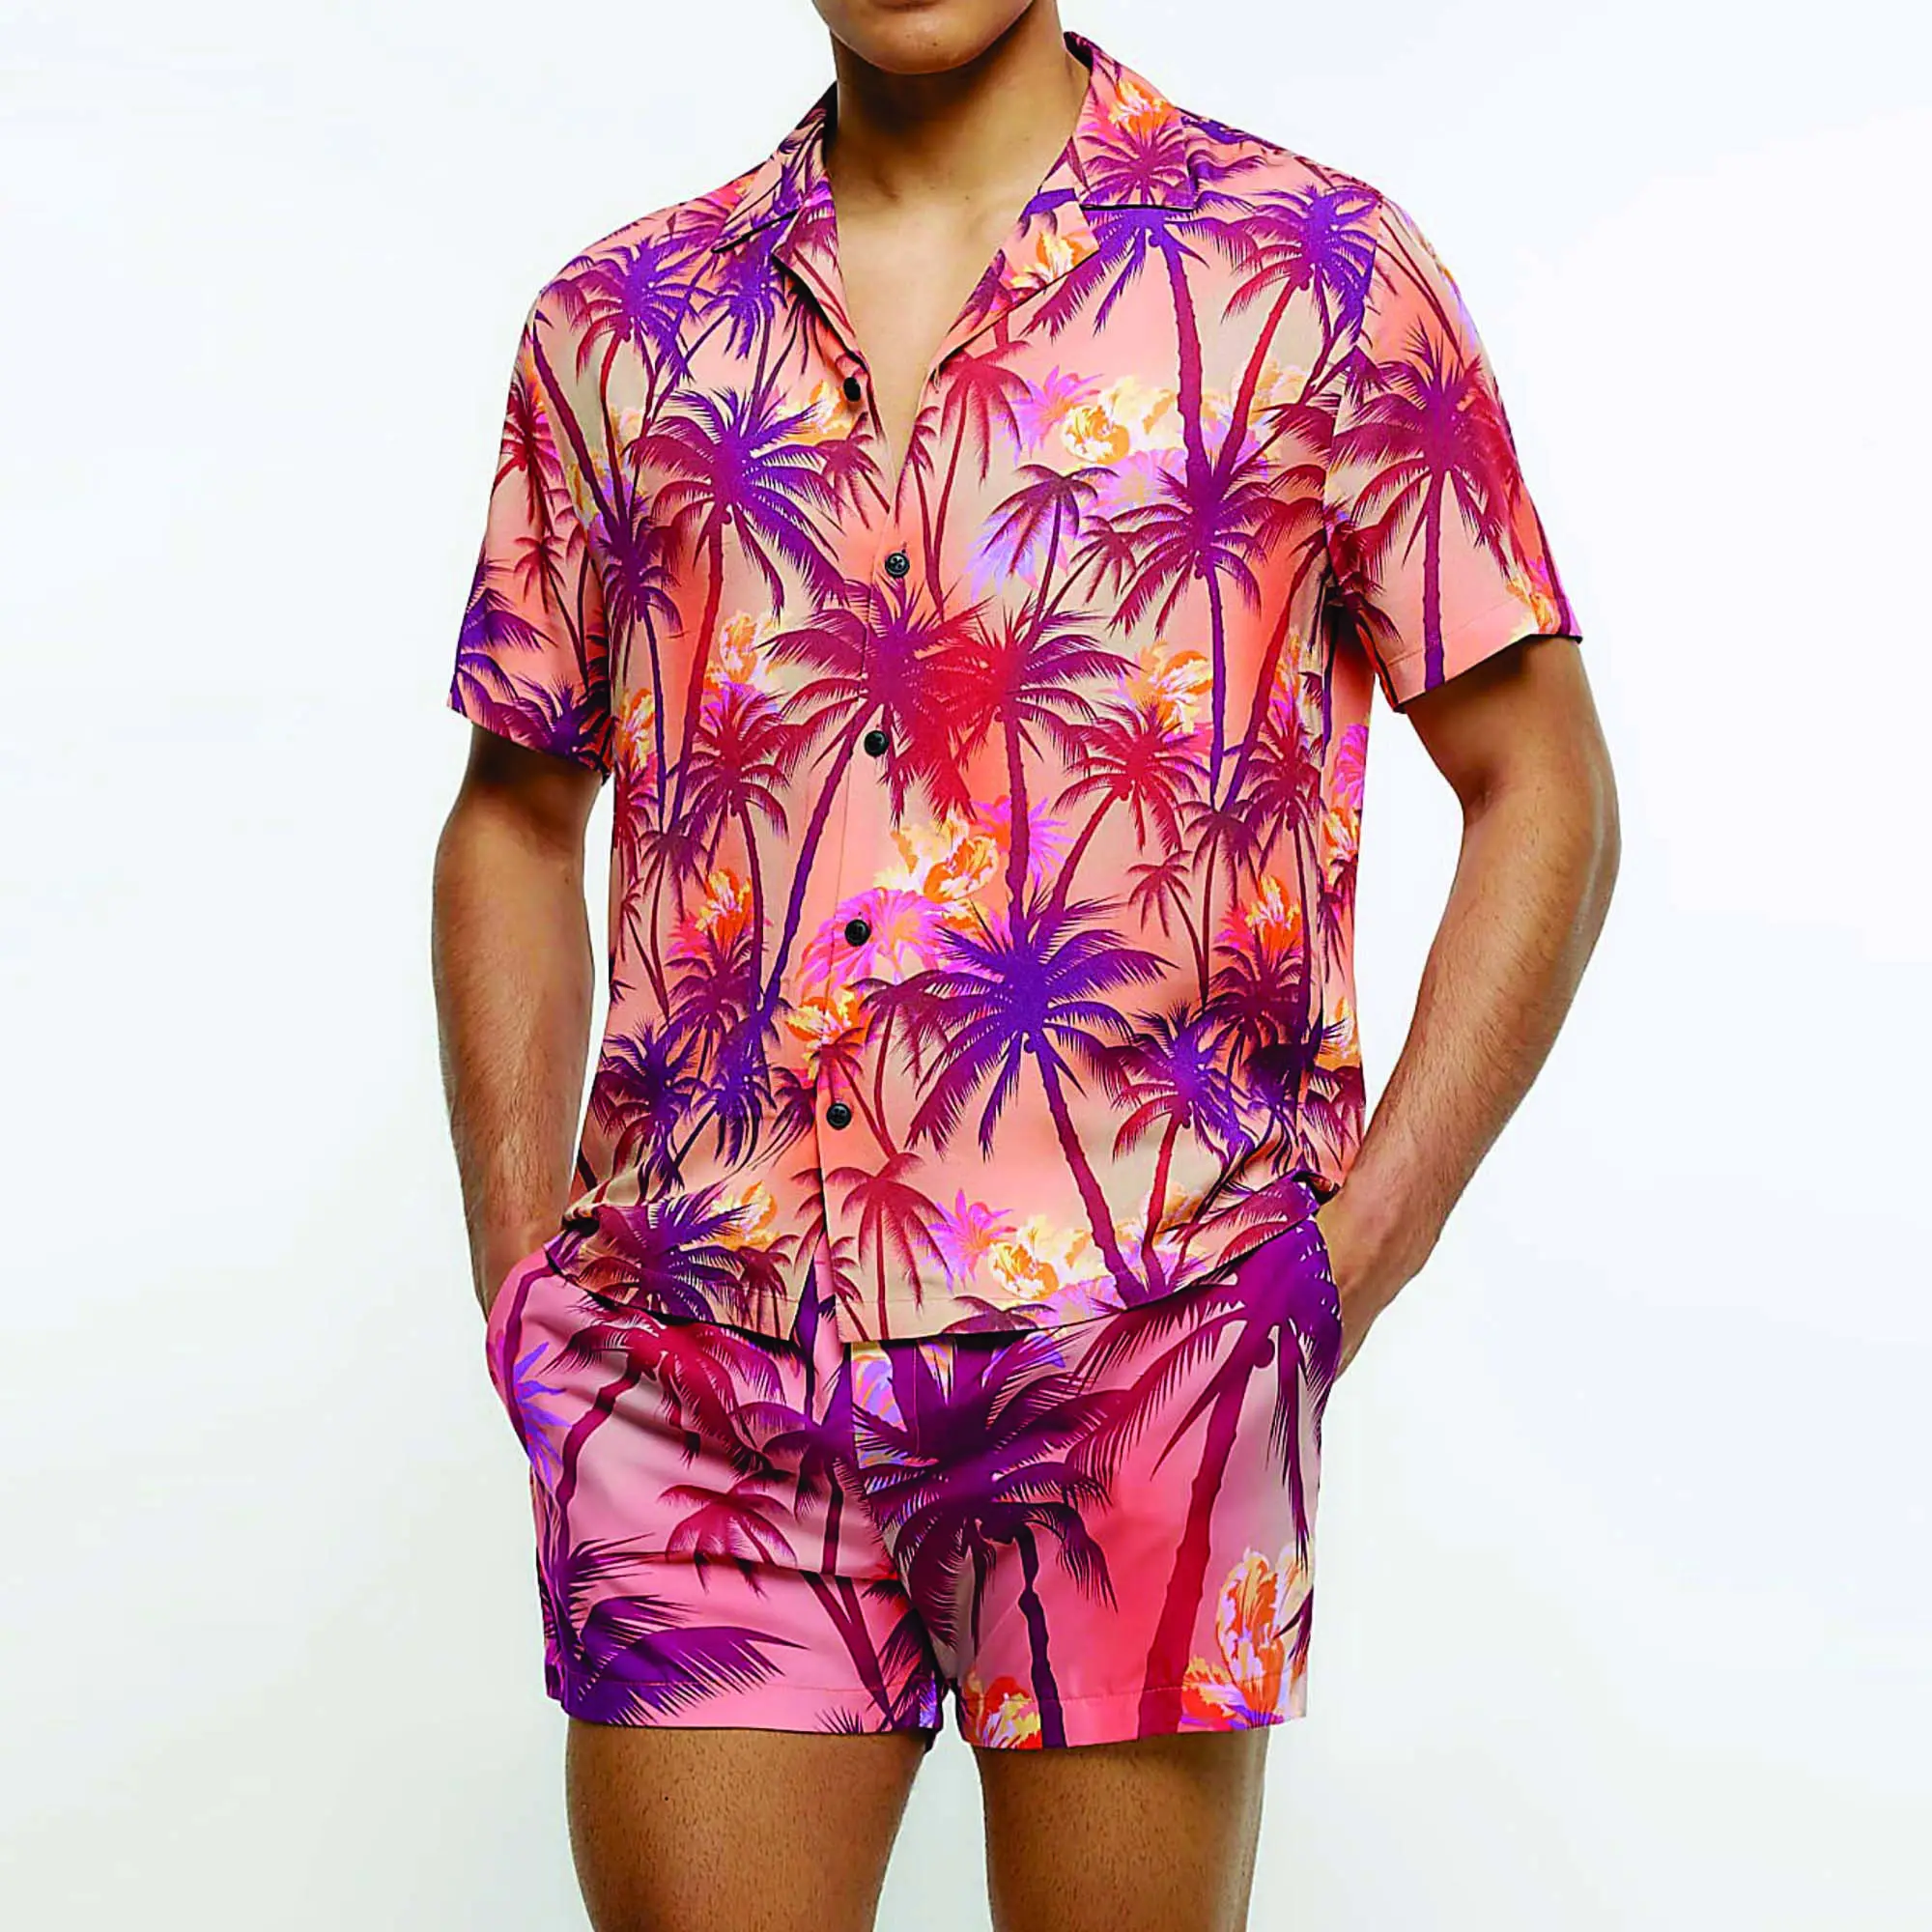 Jet Pattern hombres camisa botón camisas Top manga corta Camiseta casual Vacaciones verano personalizado 3D impresión hawaiana suelta camisa floral